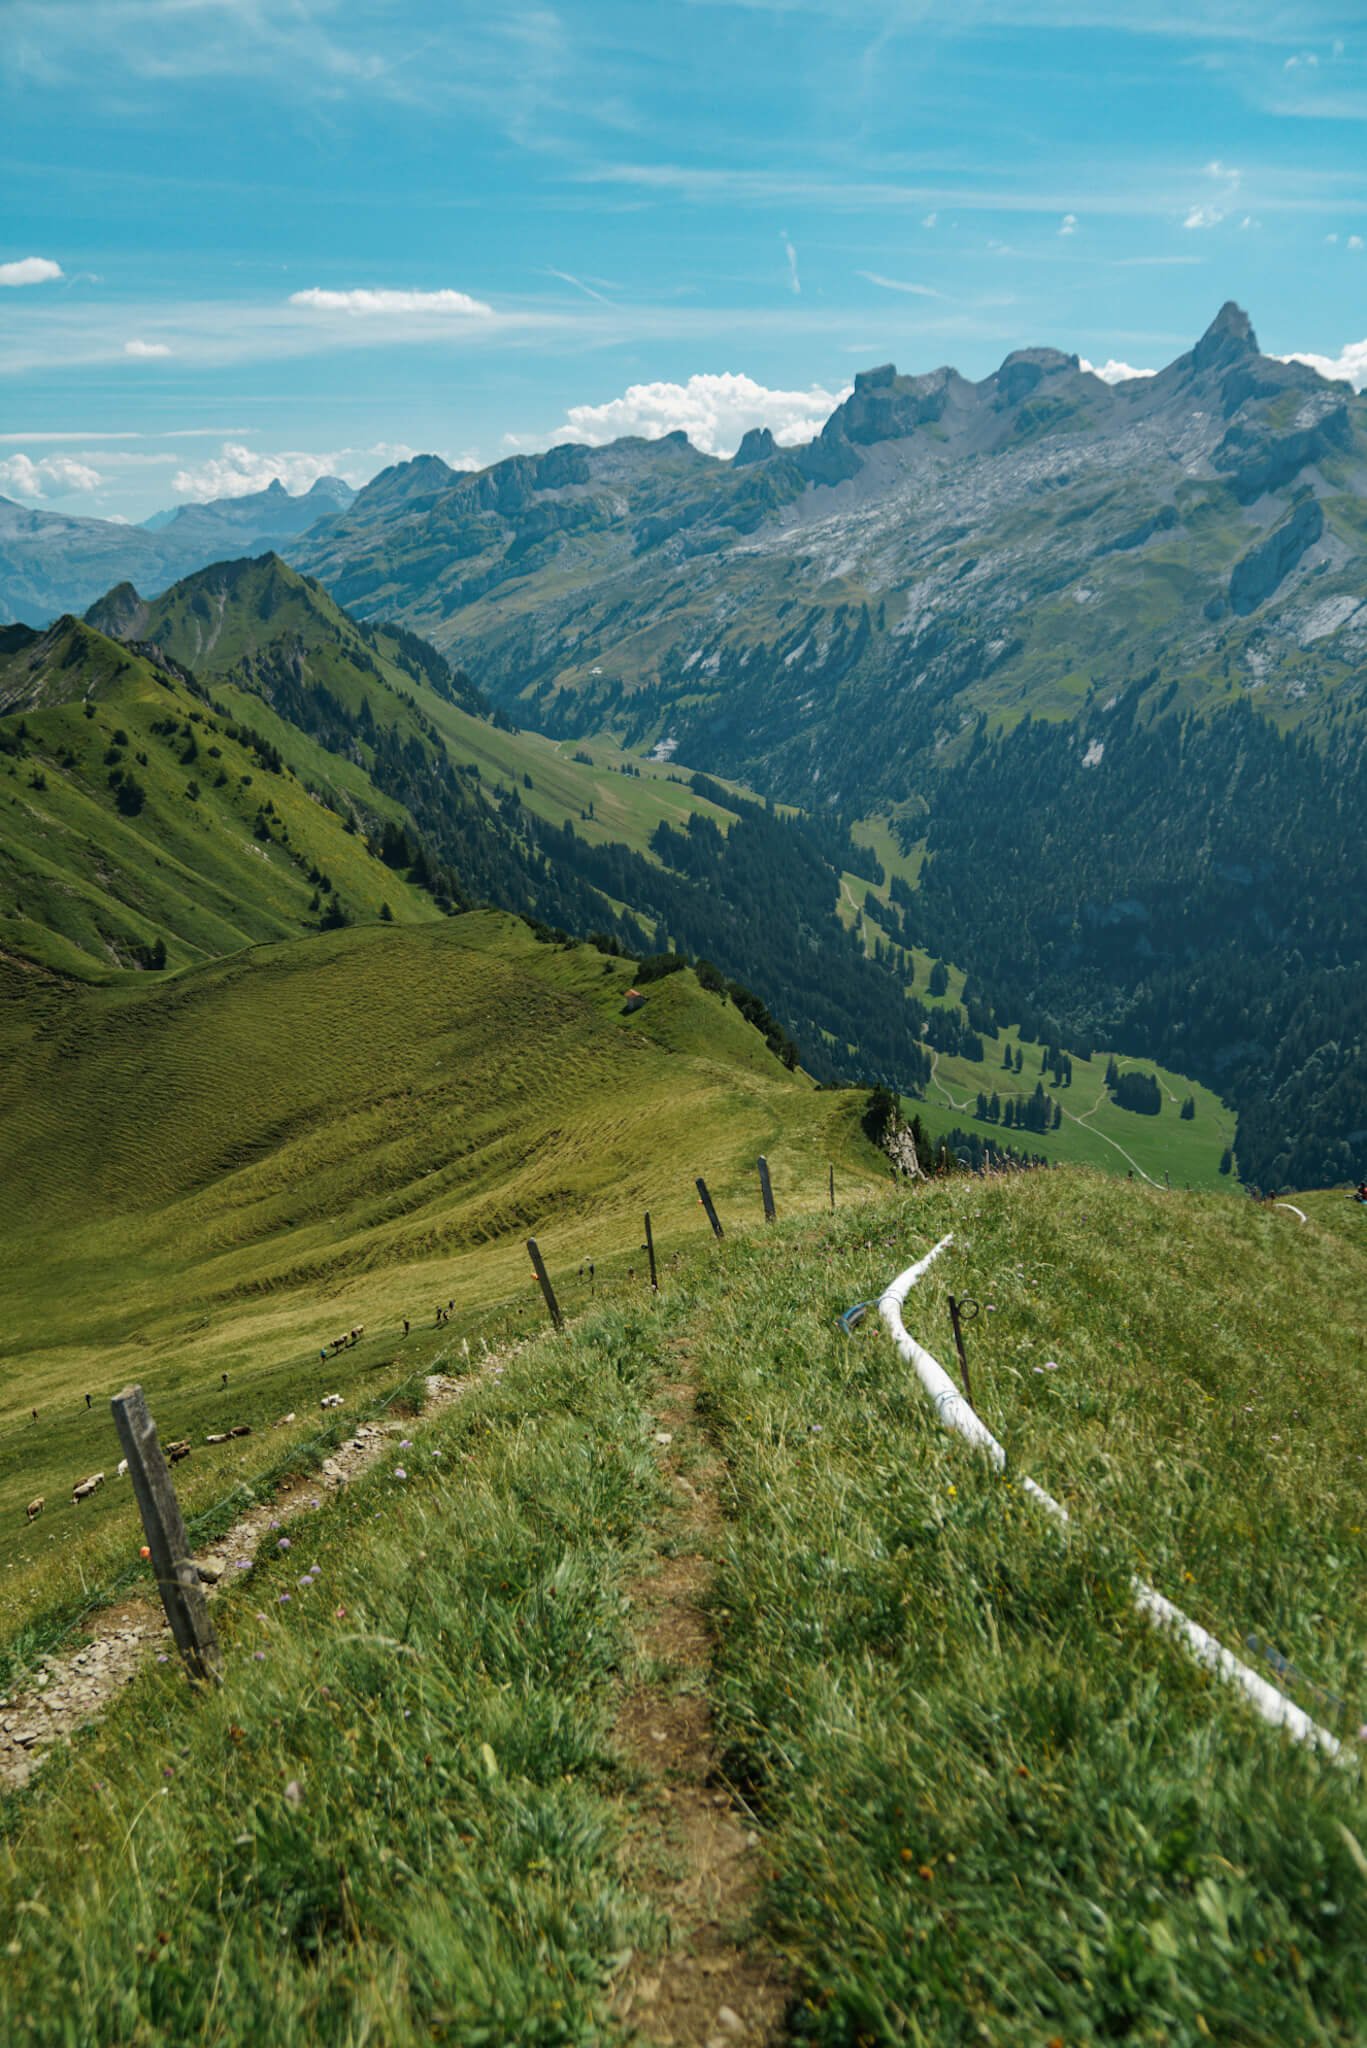 Stoos ridge hike in Switzerland